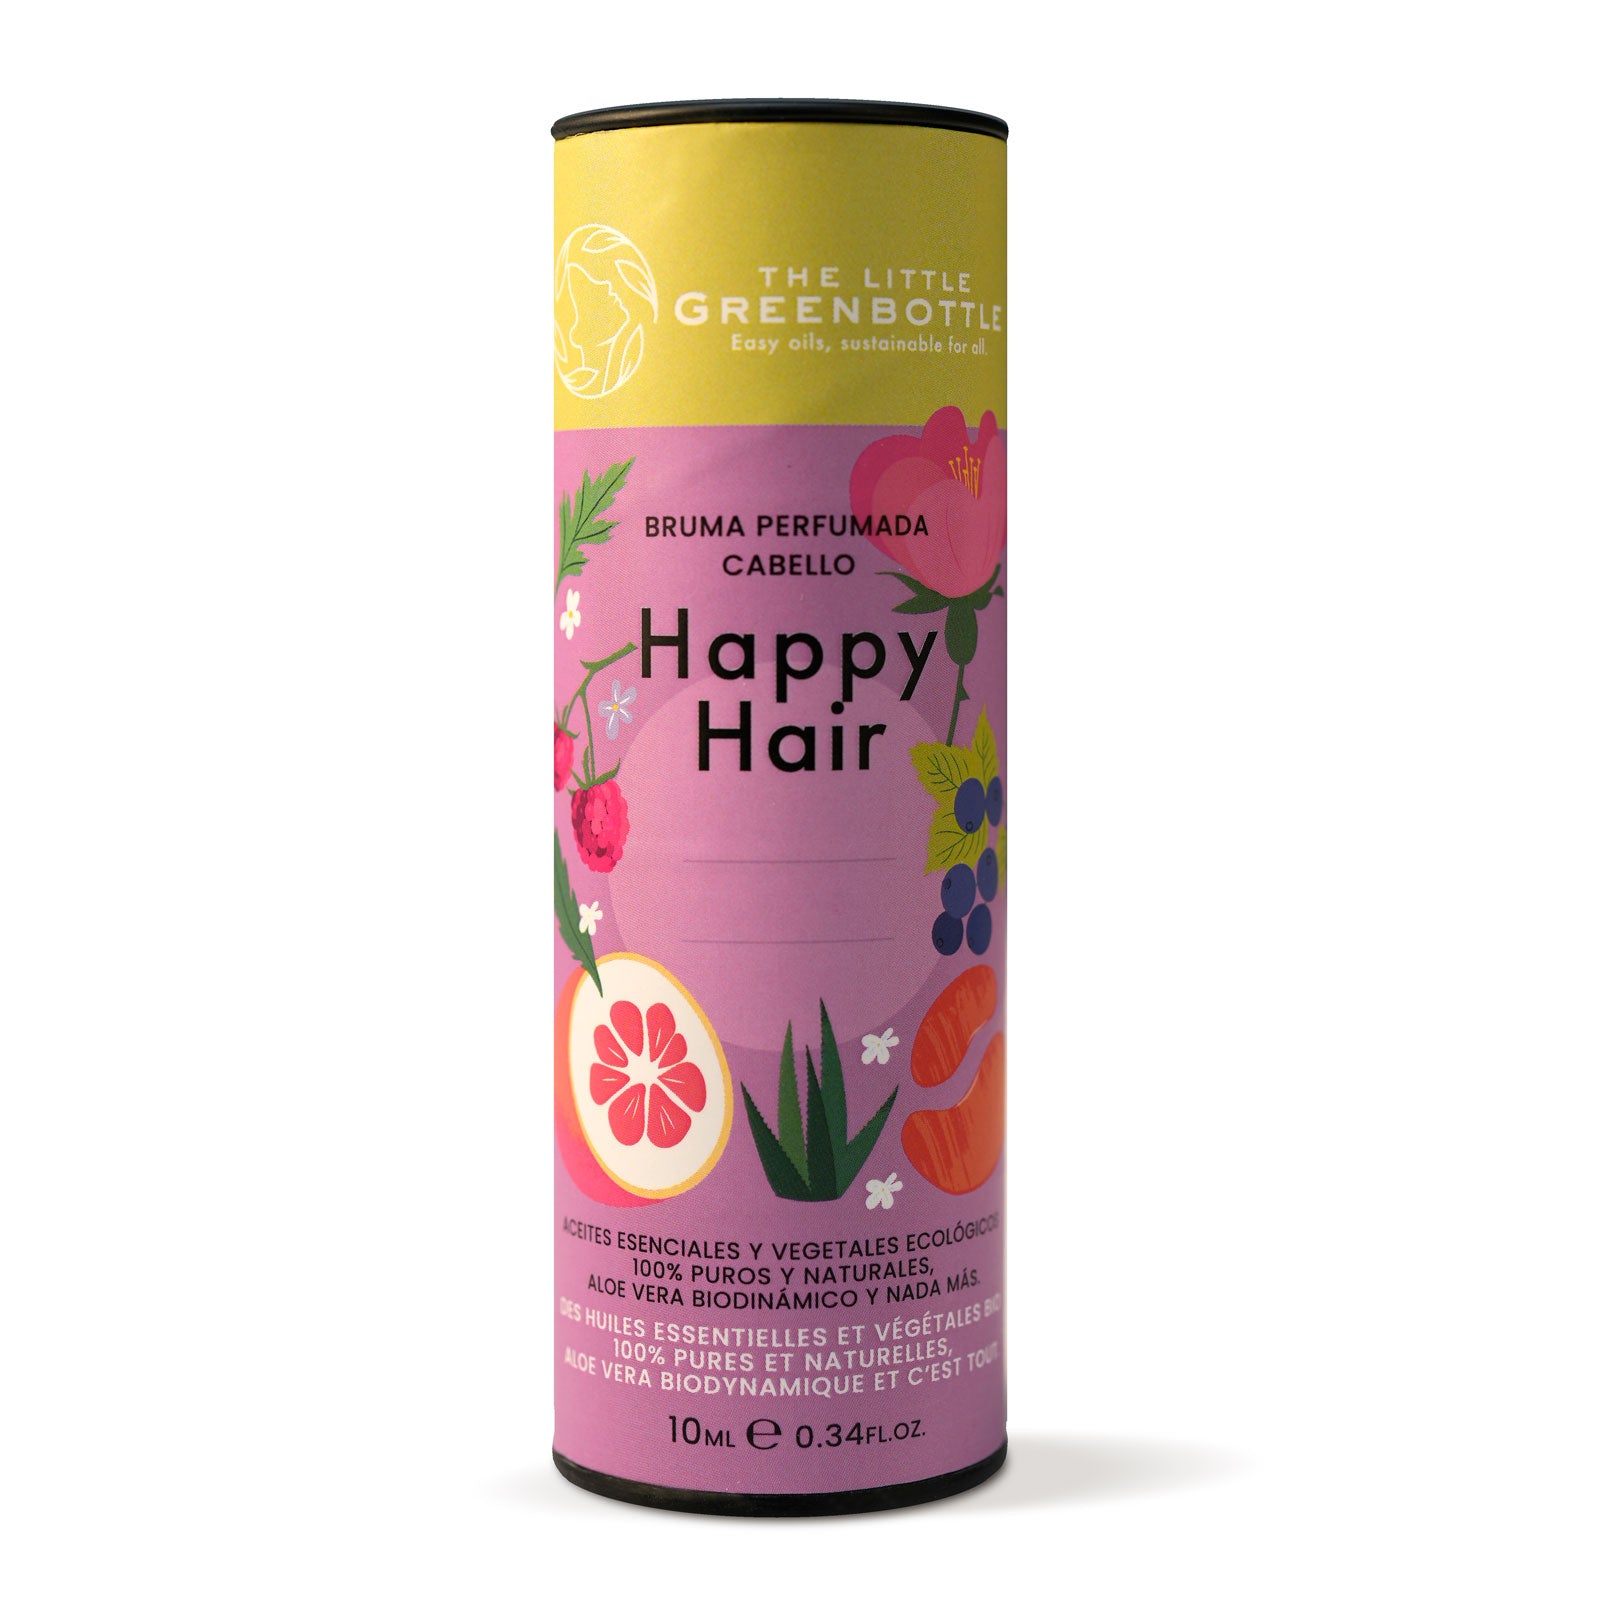 Bruma perfumada cabello - HAPPY HAIR